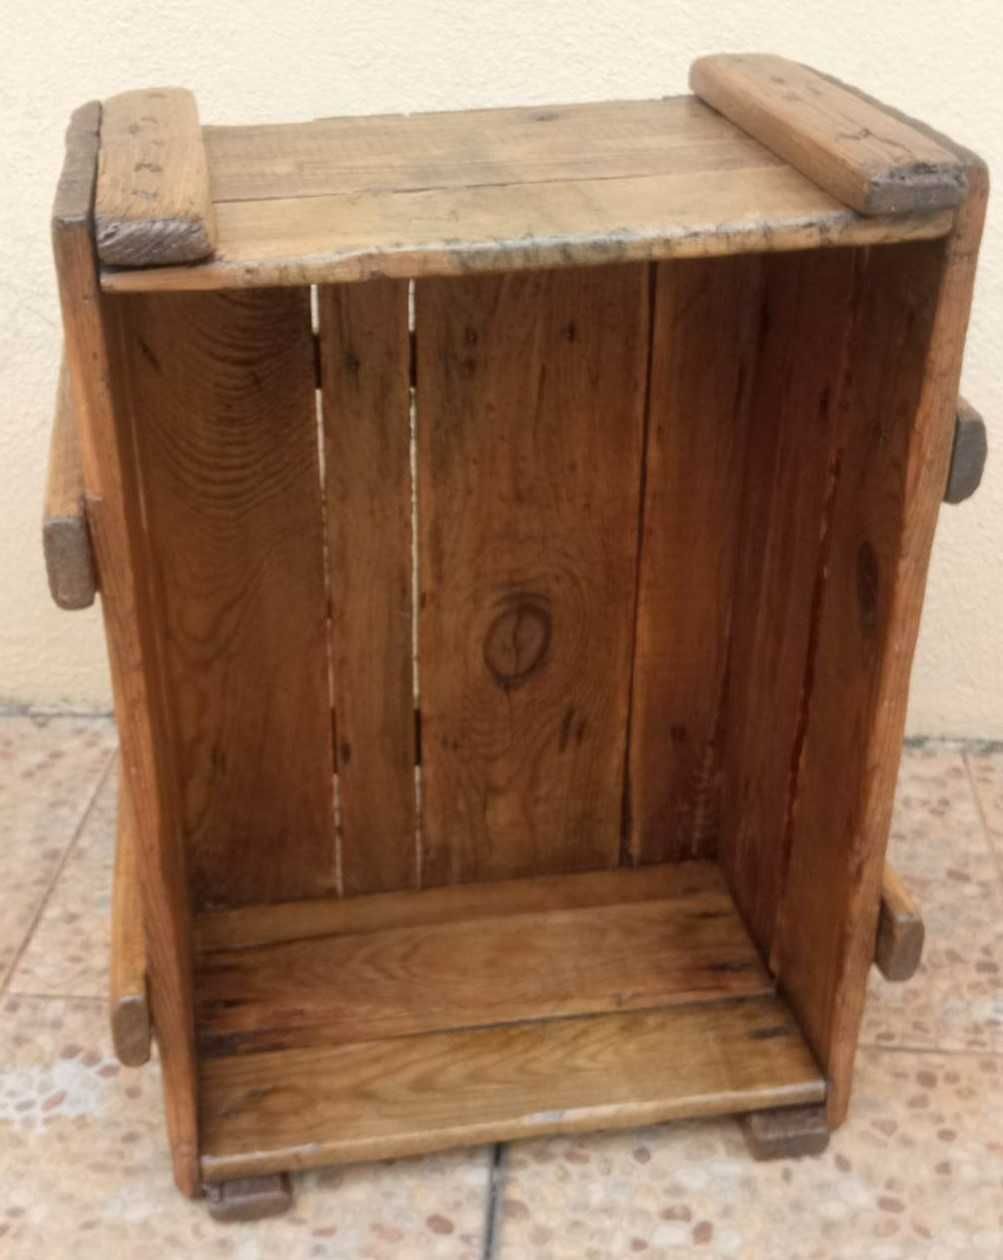 Antiga caixa em madeira de indústria - anos 60/70